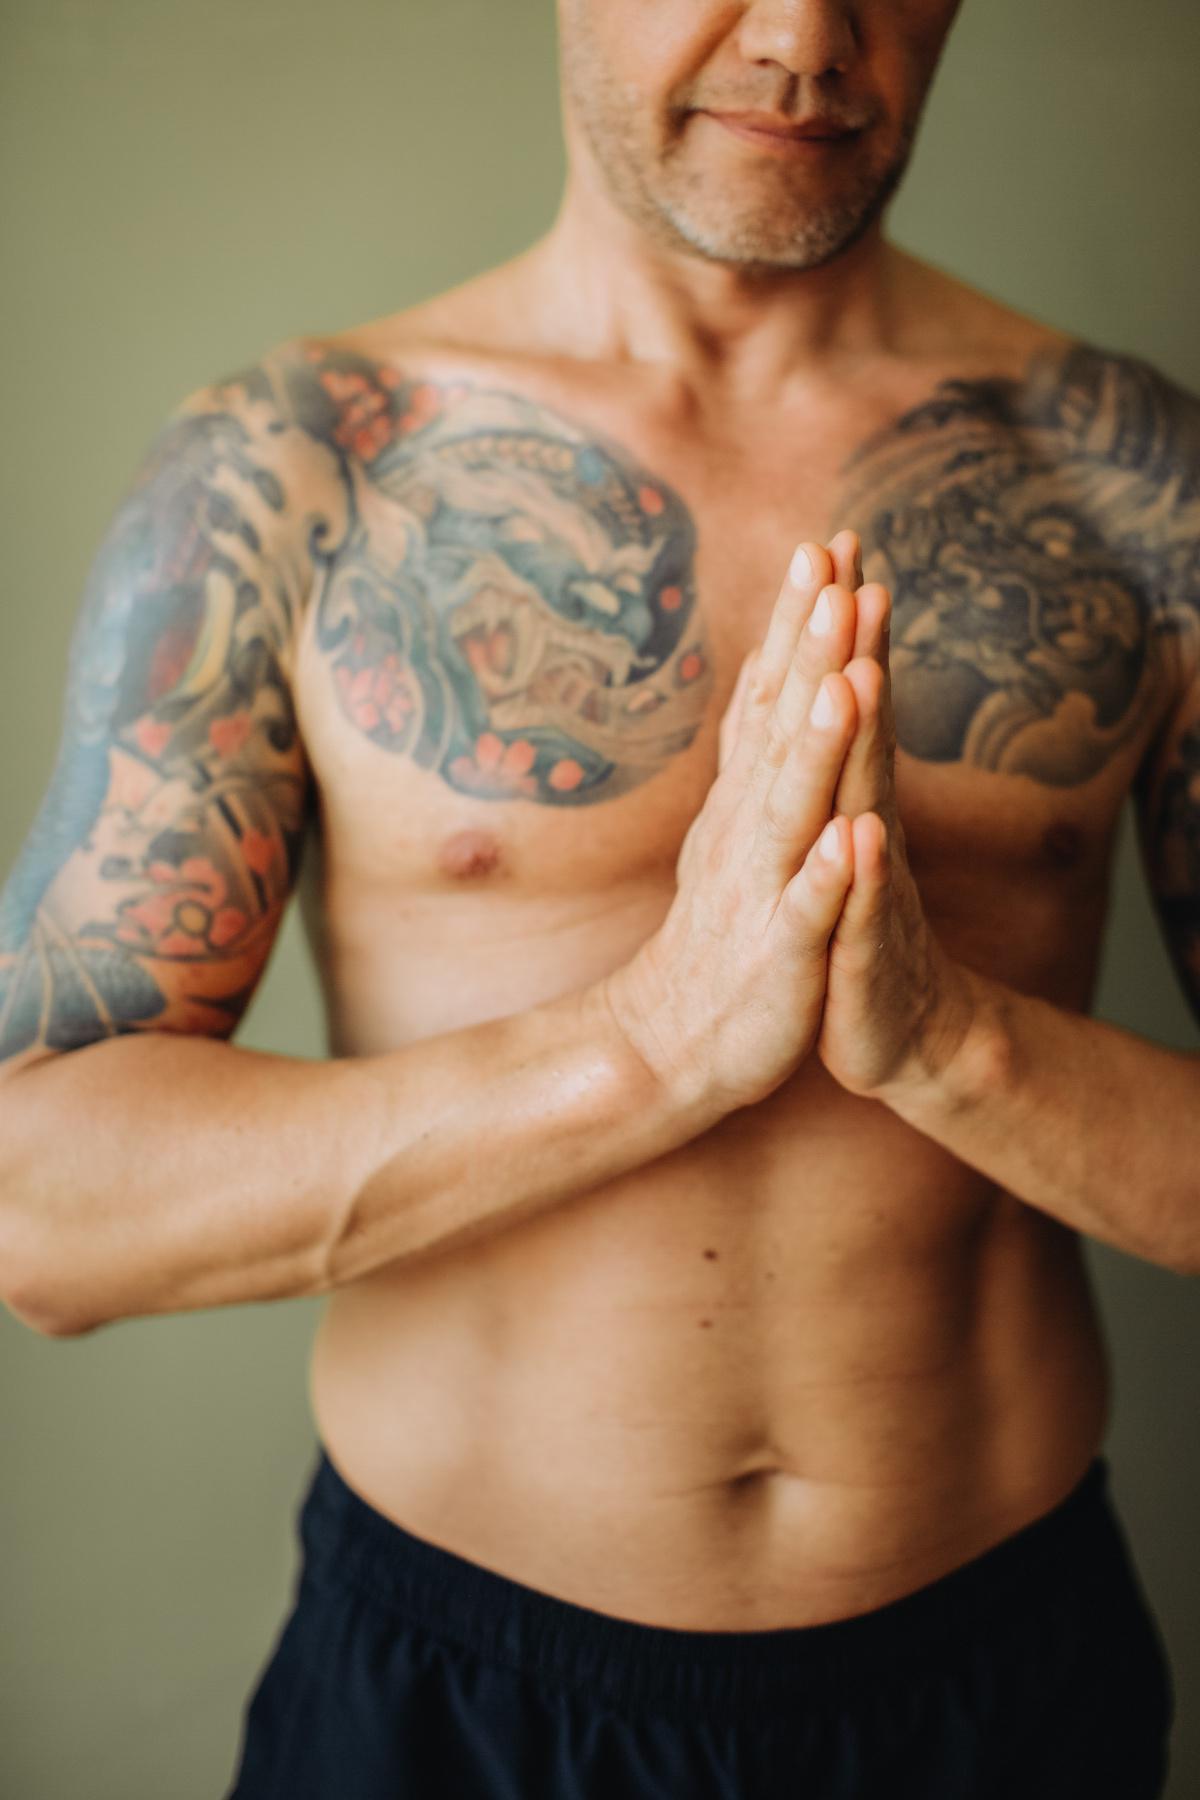 Darf man als Buddhist Yoga machen?